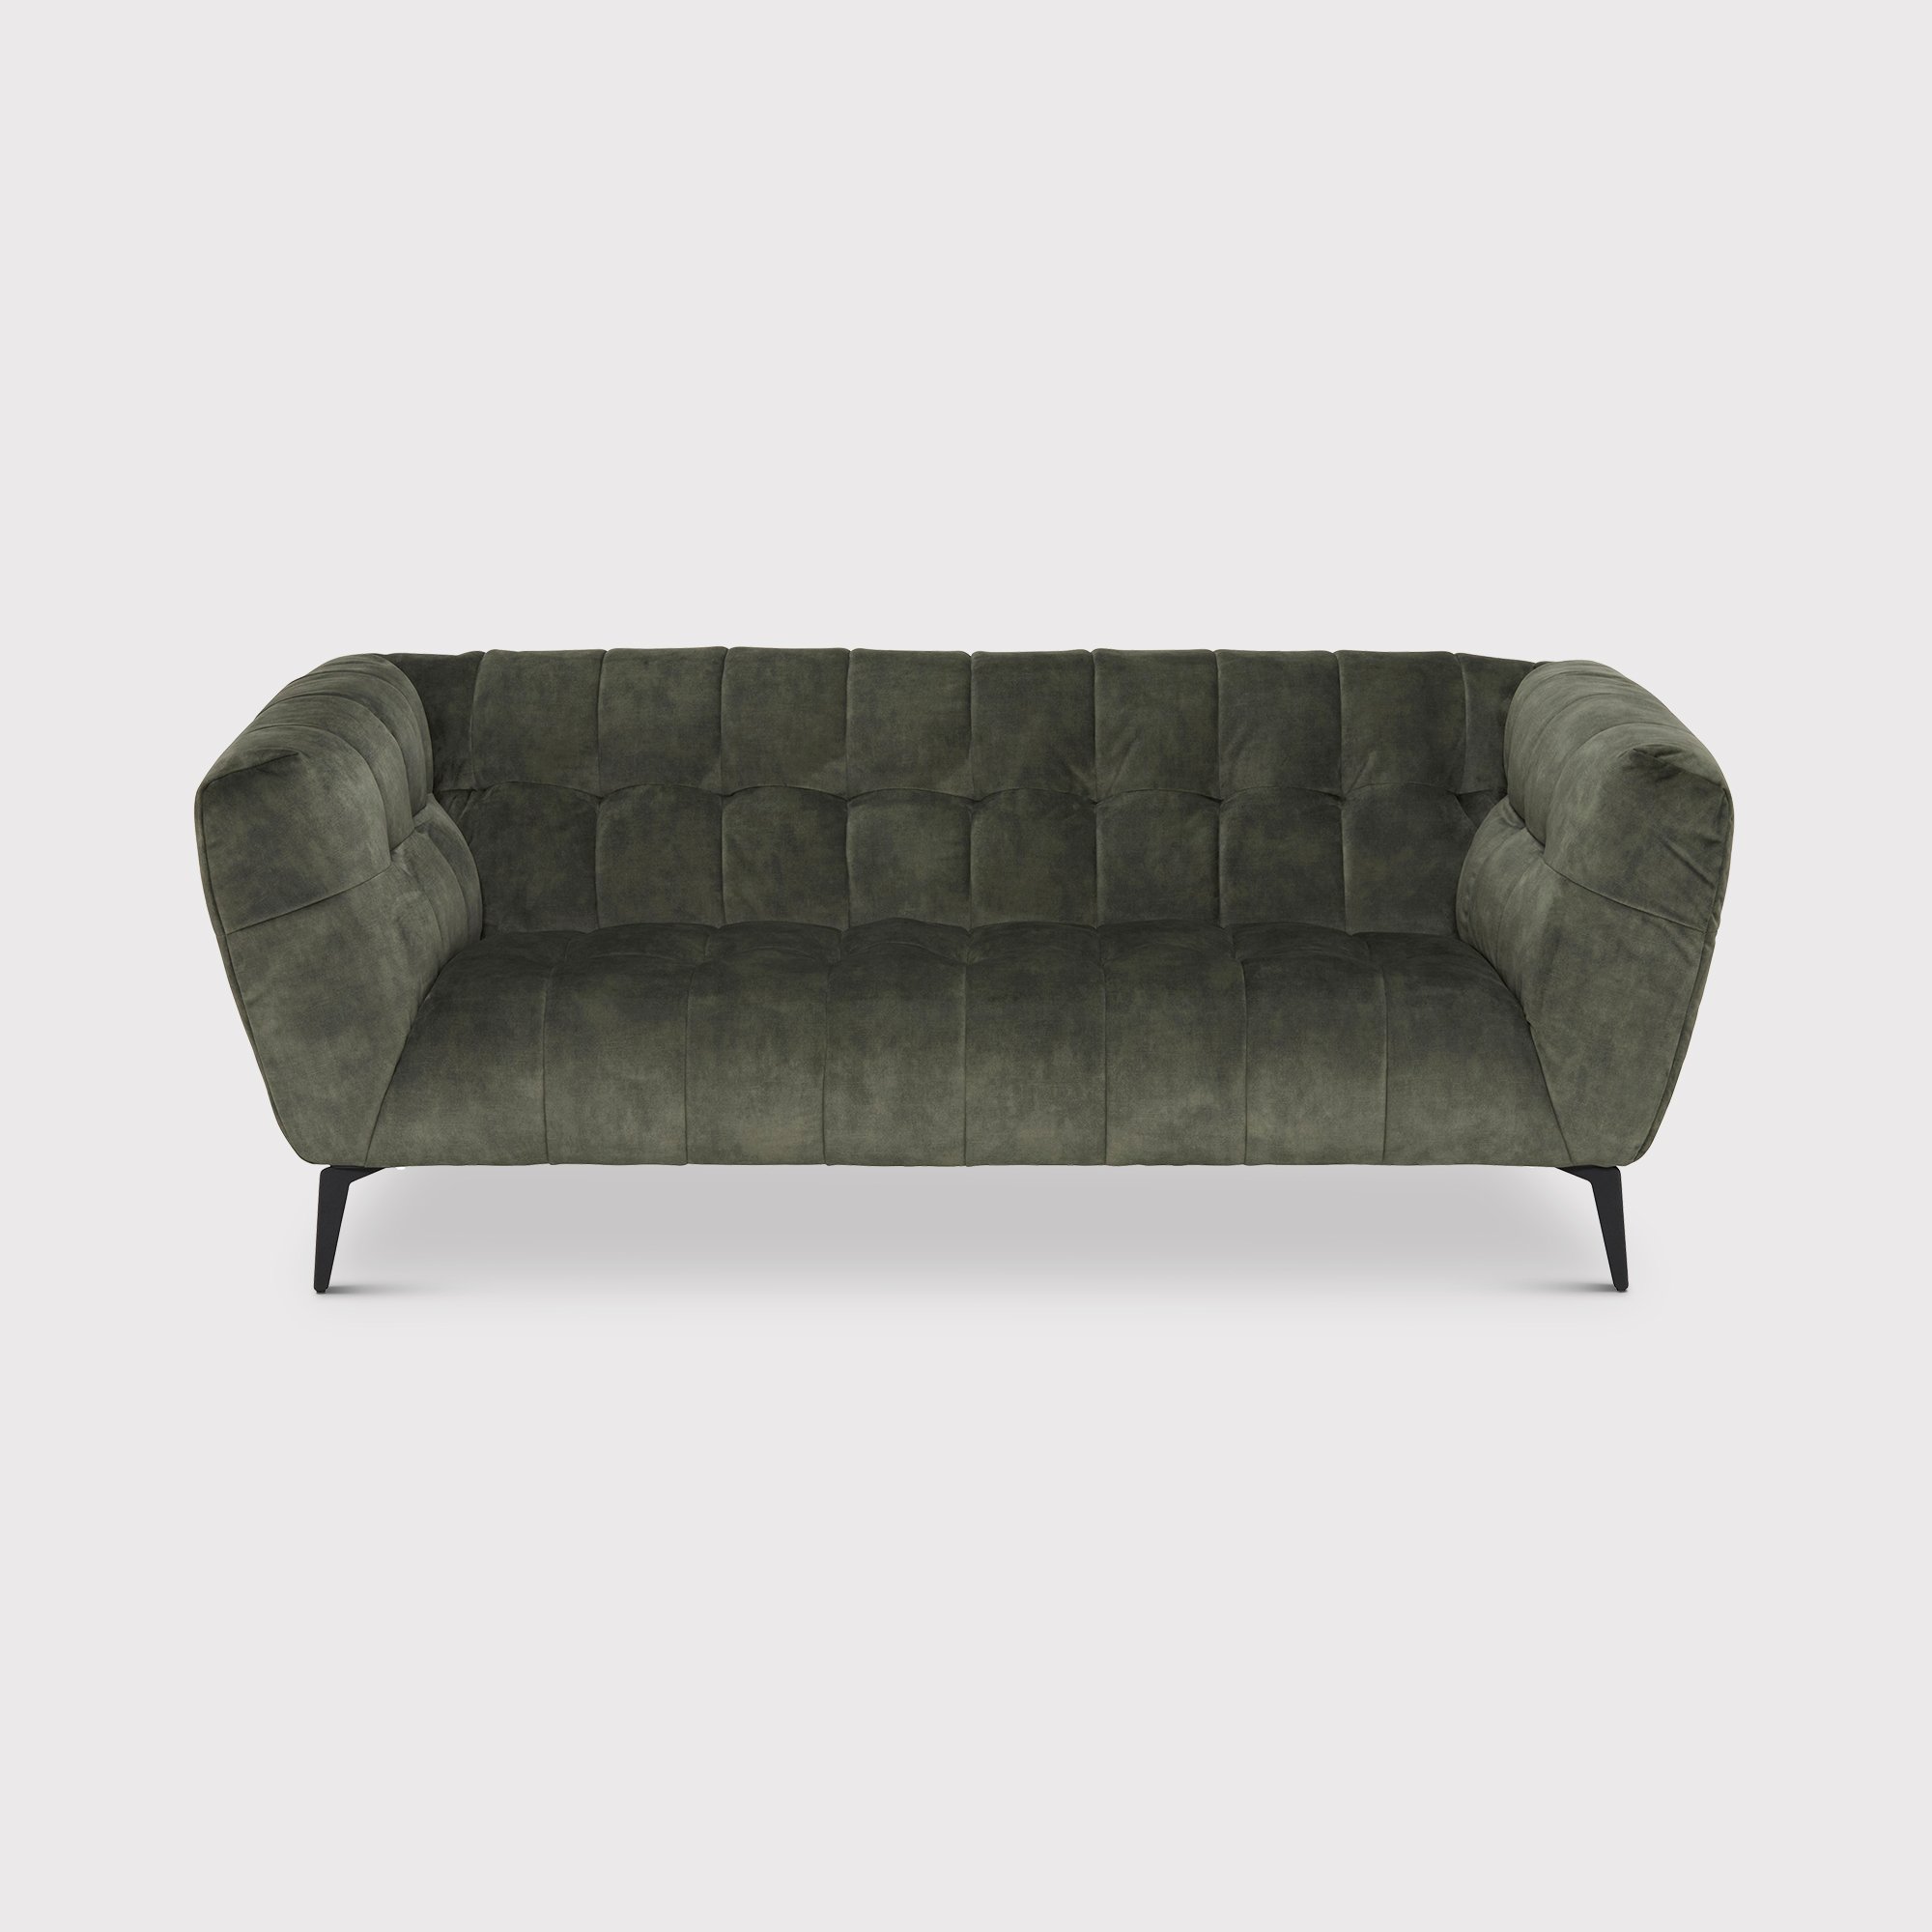 Azalea 2 Seater Sofa, Green Fabric | Barker & Stonehouse